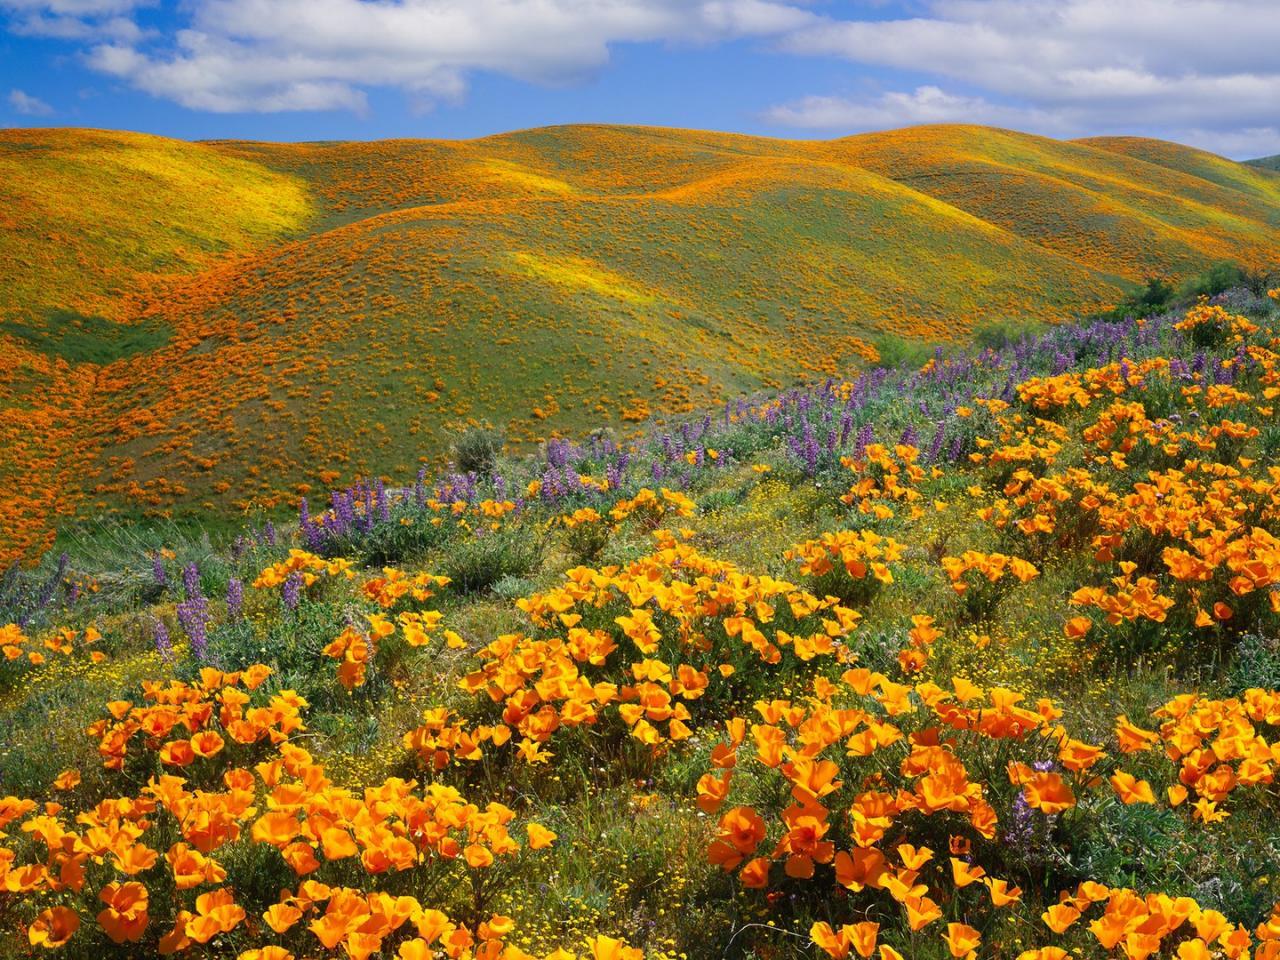 8. Hoa anh túc vàng ở thung lũng Antelopey, California